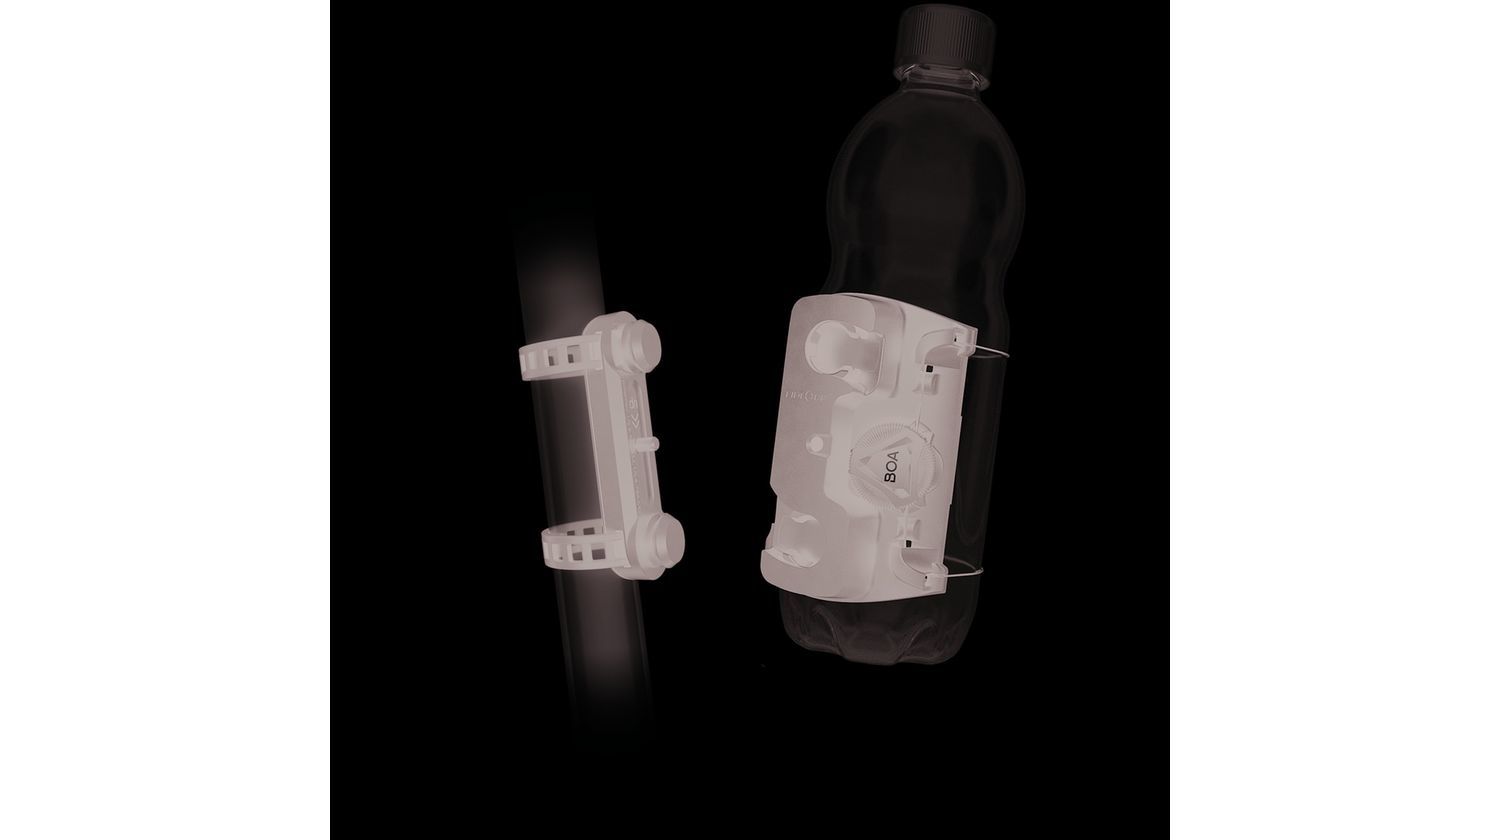 Fidlock Twist universeller Trinkflaschenhalter Befestigung mit Boa® Fit System inkl. magnet-mechanischem Flaschenhaltersystem uni base schwarz